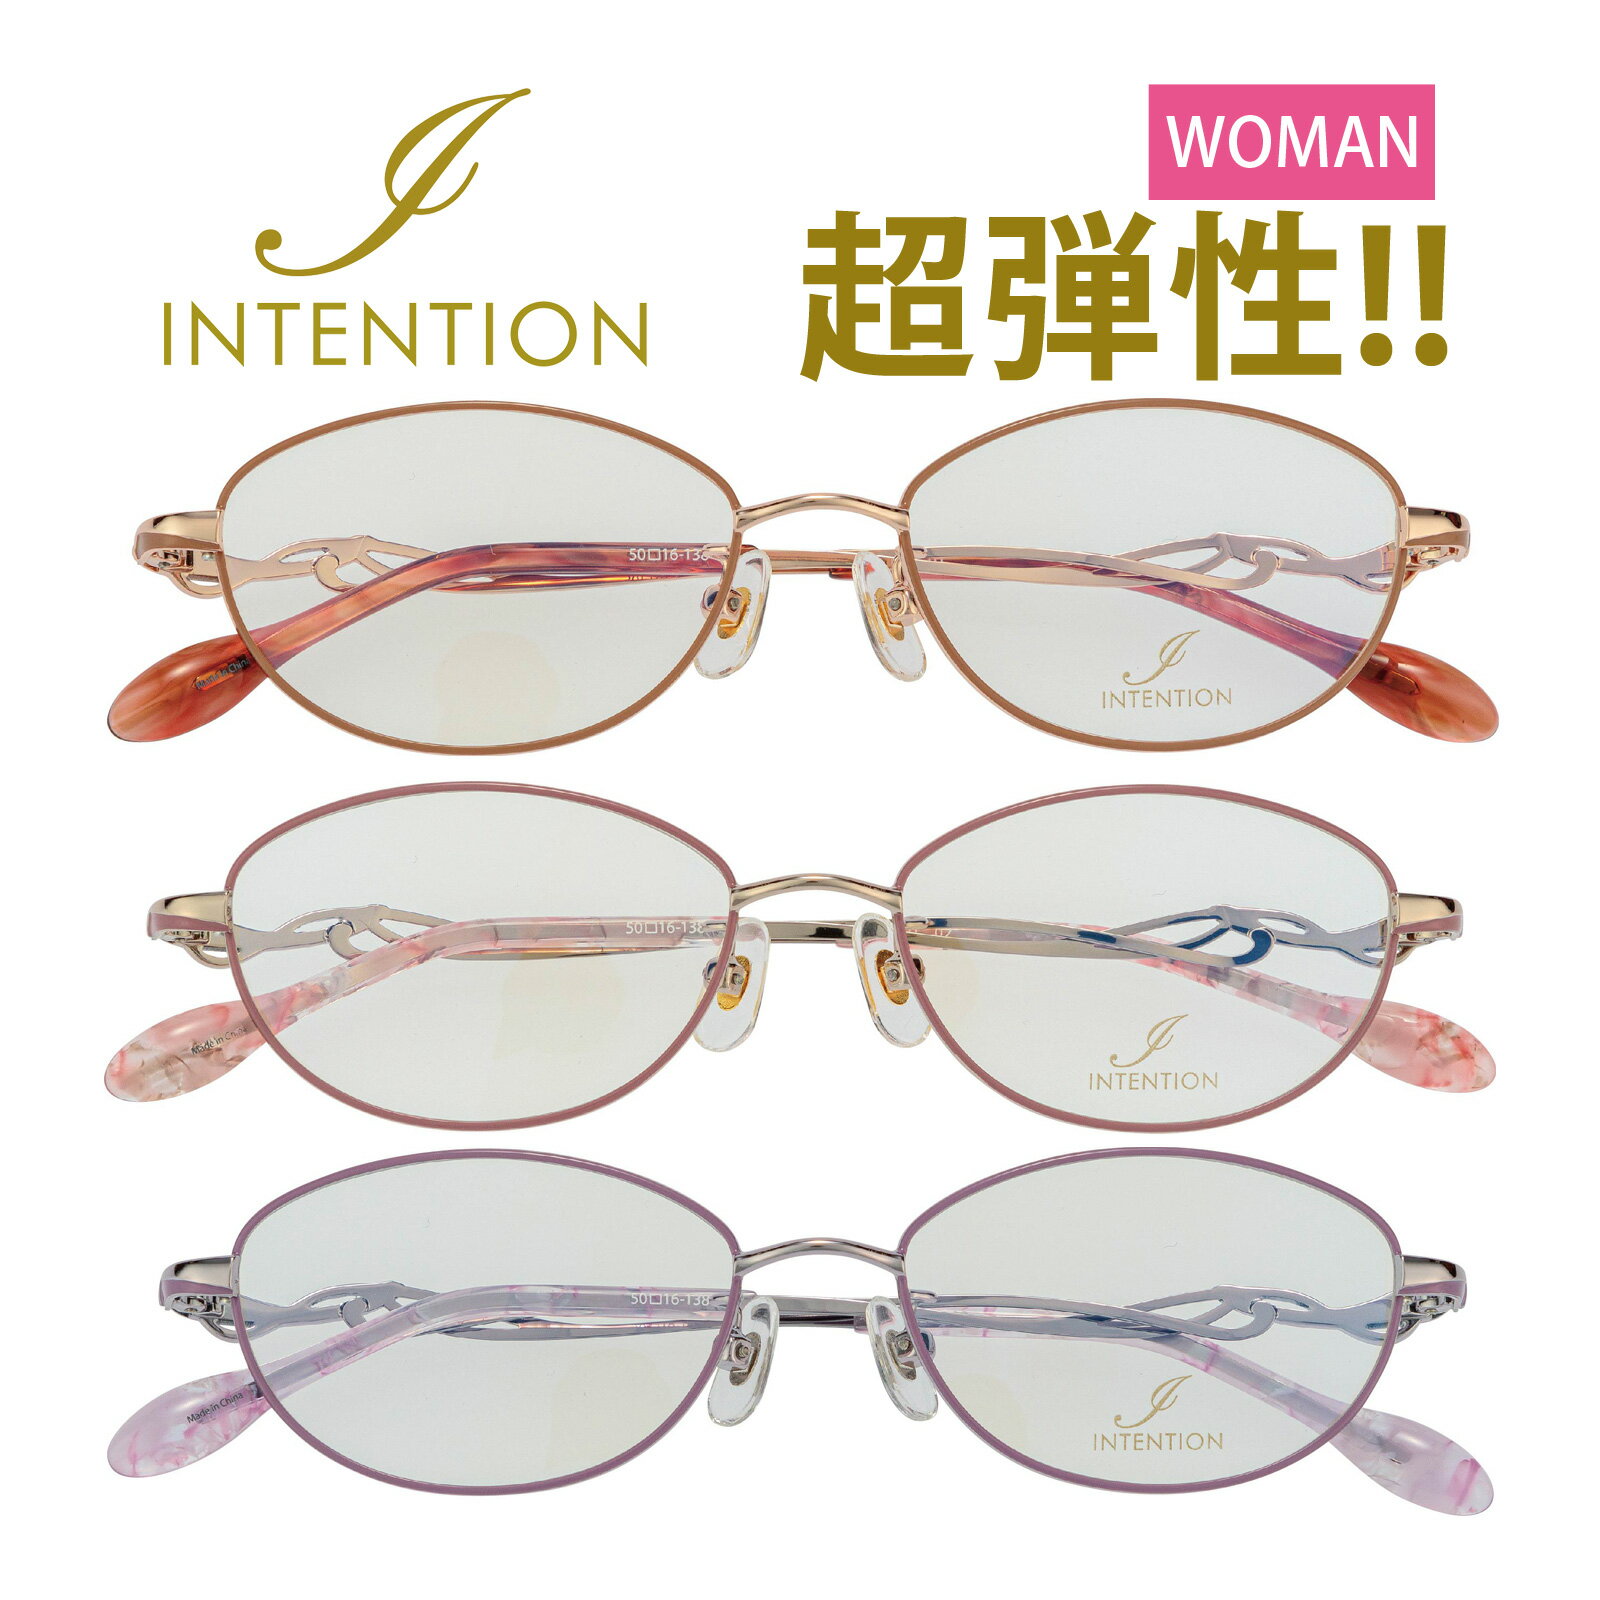 メガネフレームのみ インテンション 女性用 眼鏡 枠 レディース おしゃれ おすすめ メガネ フレーム オーバル型 ステンレス テンプル プレゼント ギフト